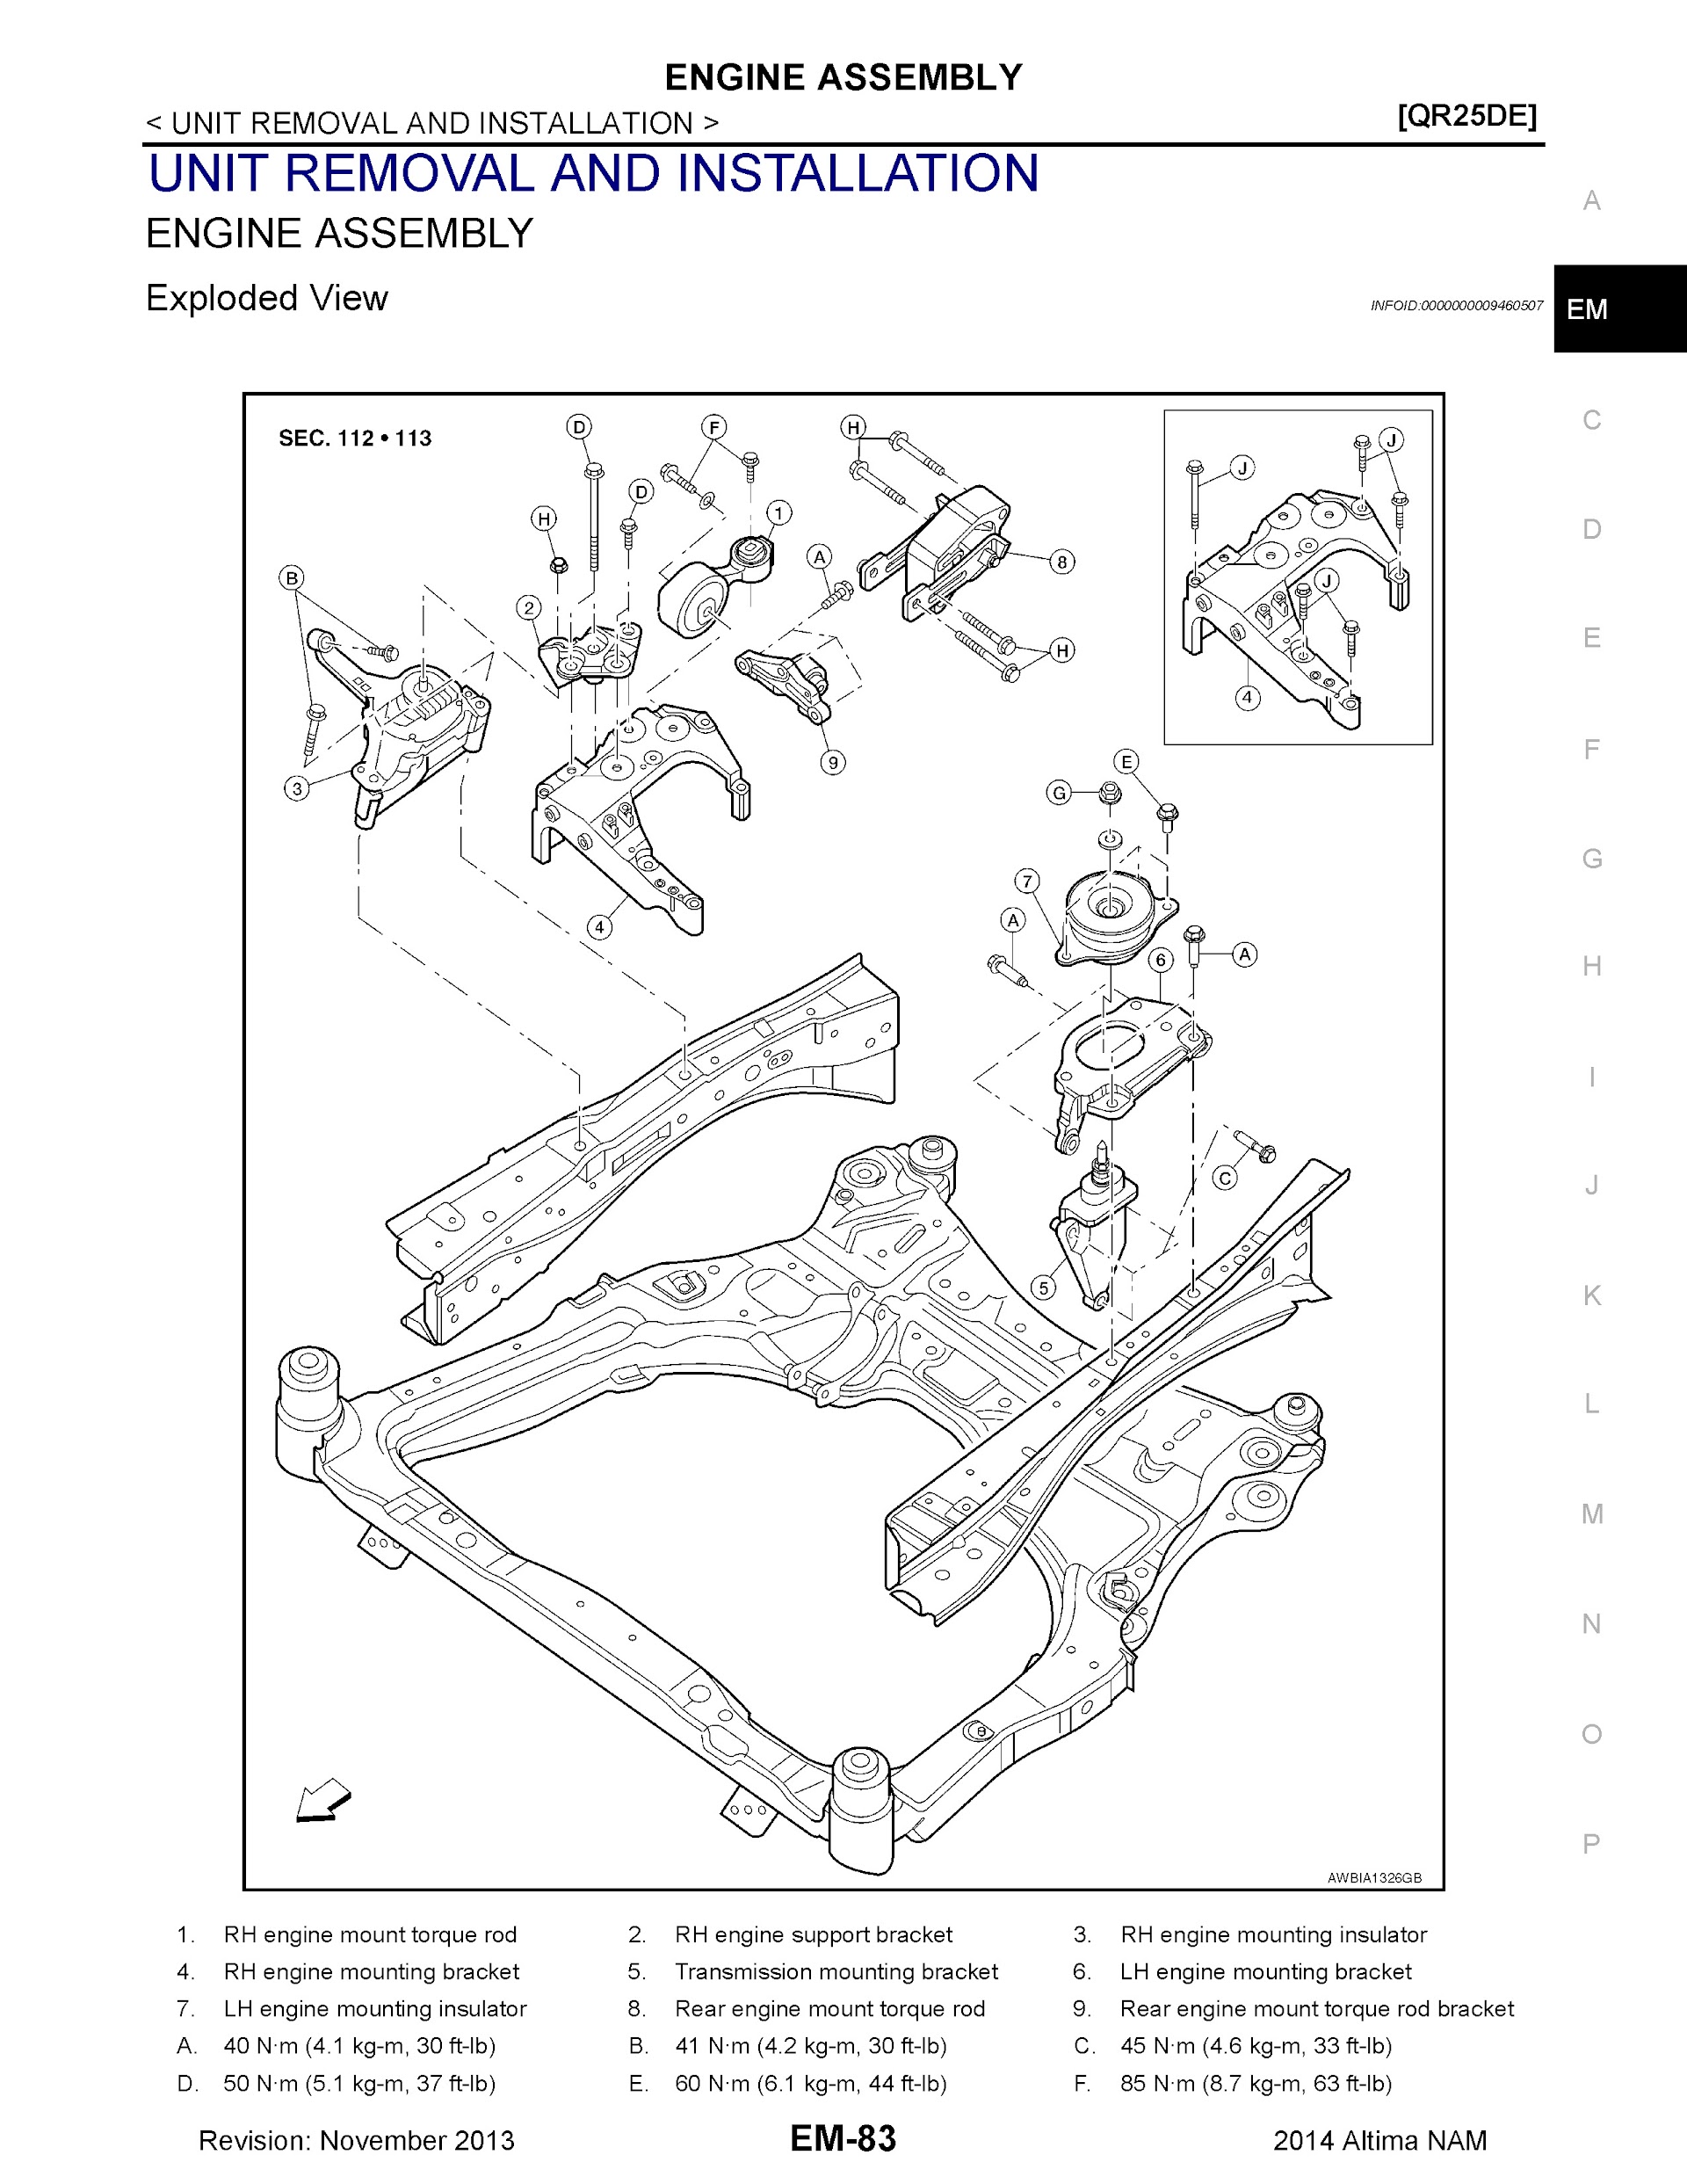 Download 2014 Nissan Altima Service Repair Manual.